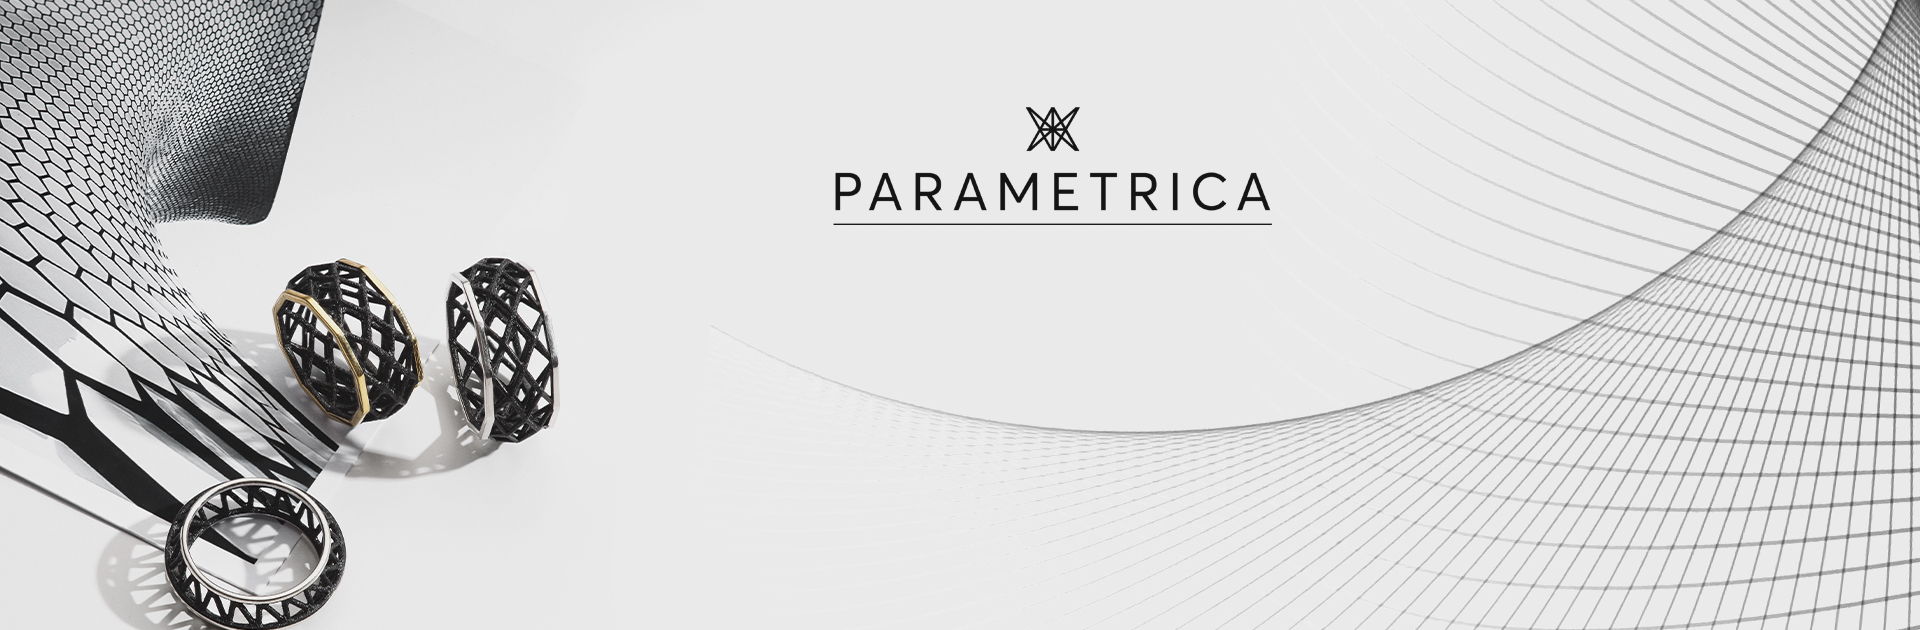 Parametrica